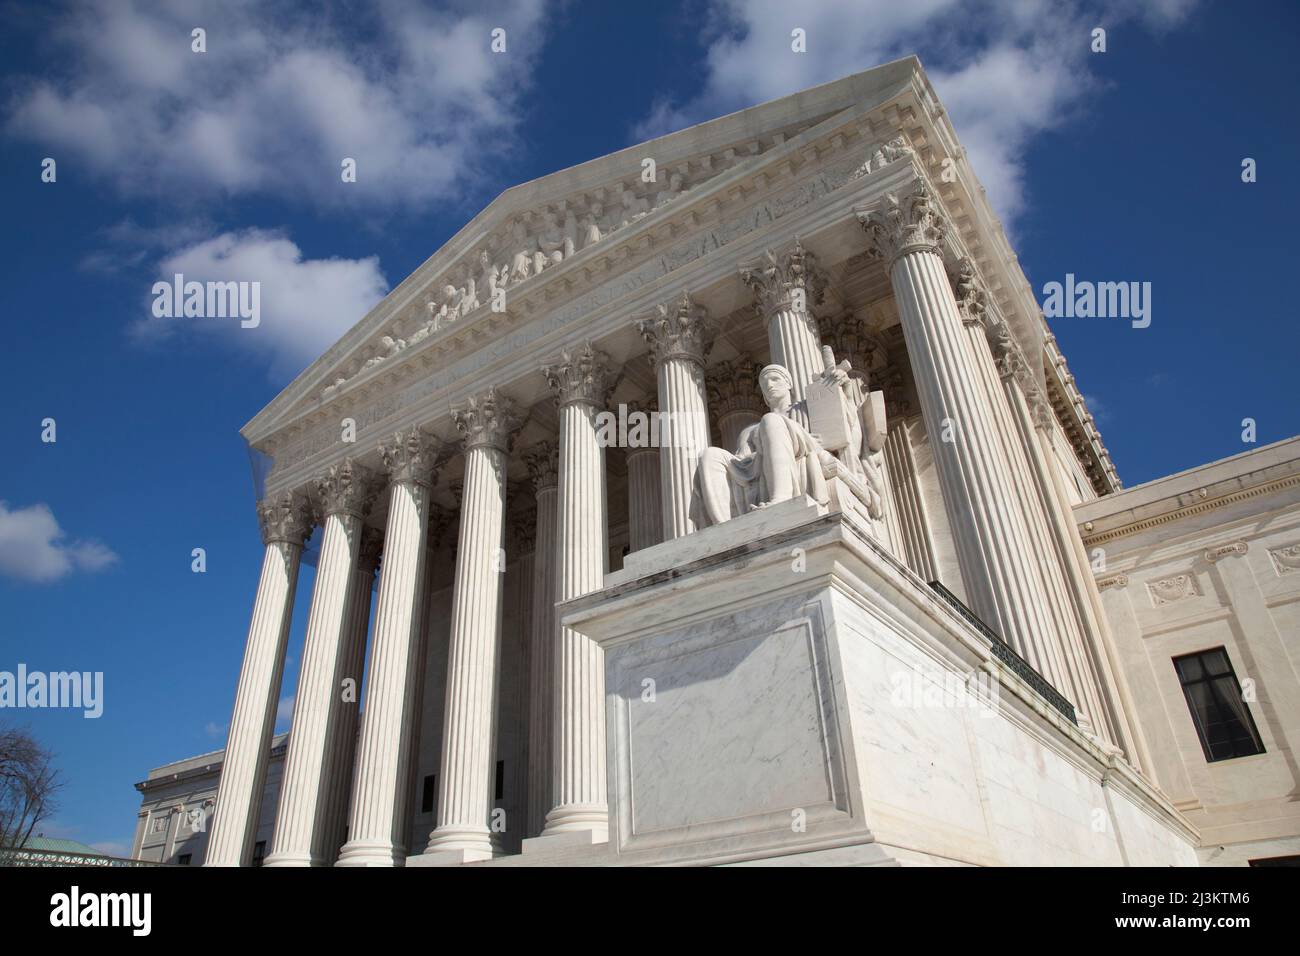 US Supreme Court building, Washington DC, USA; Washington DC, United States of America Stock Photo